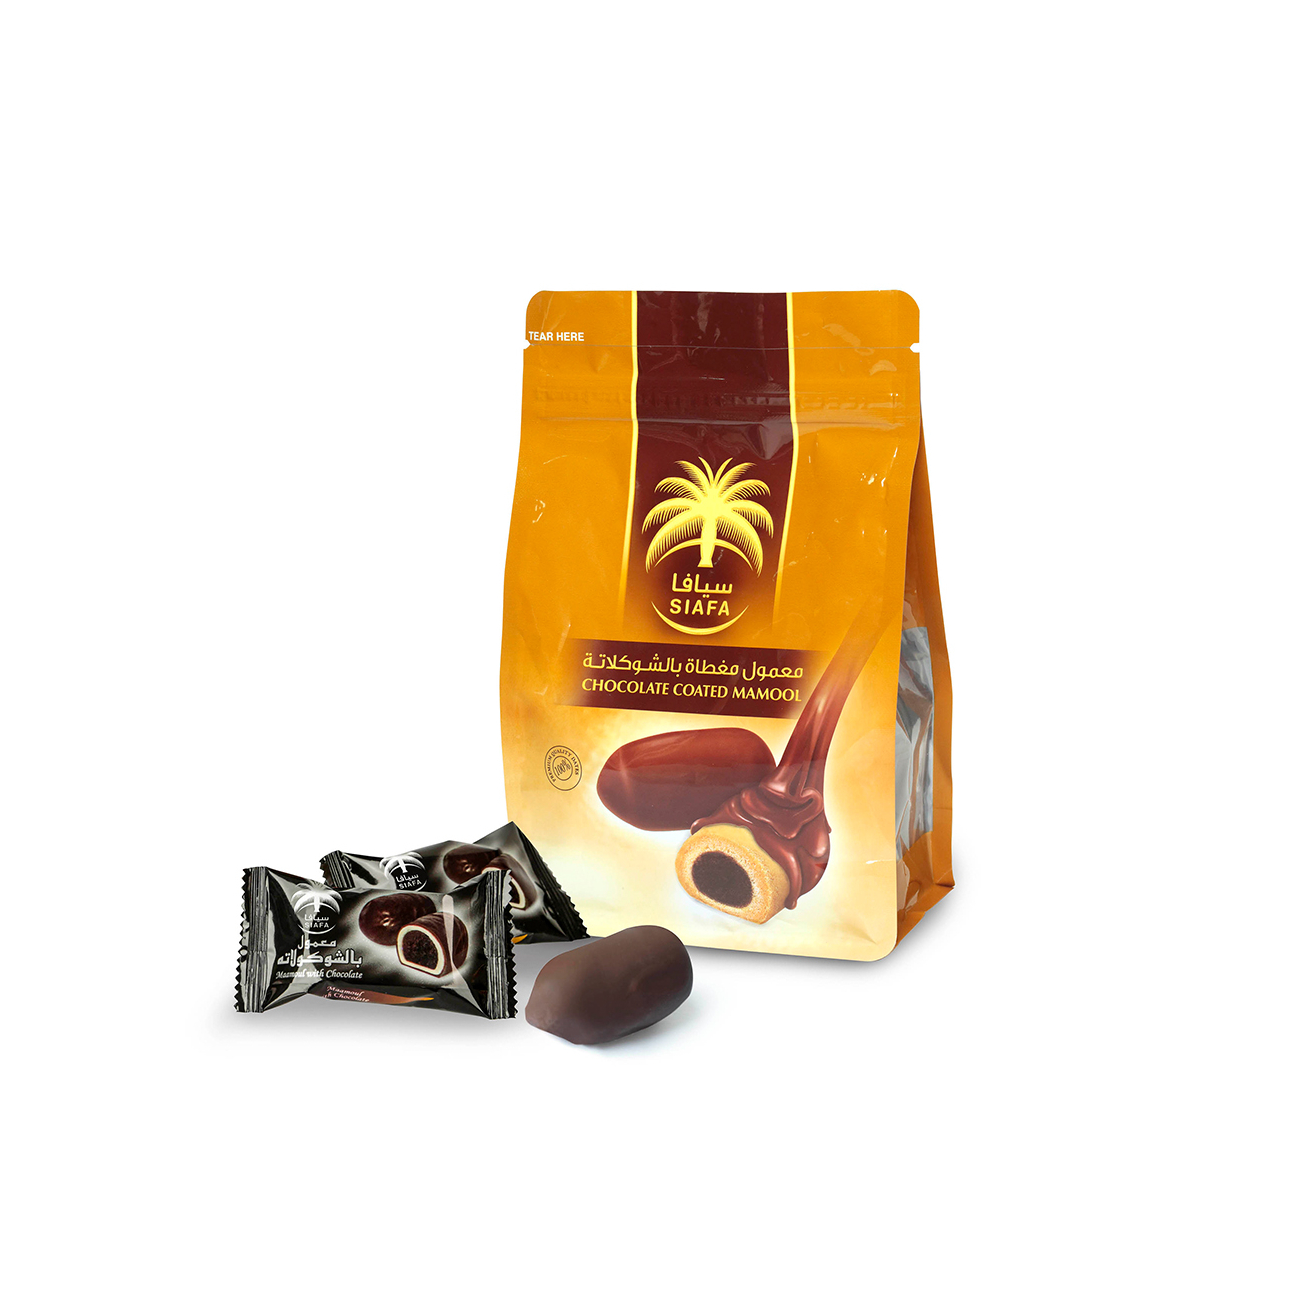 Печенье Siafa Мамуль в темном шоколаде, 210 г